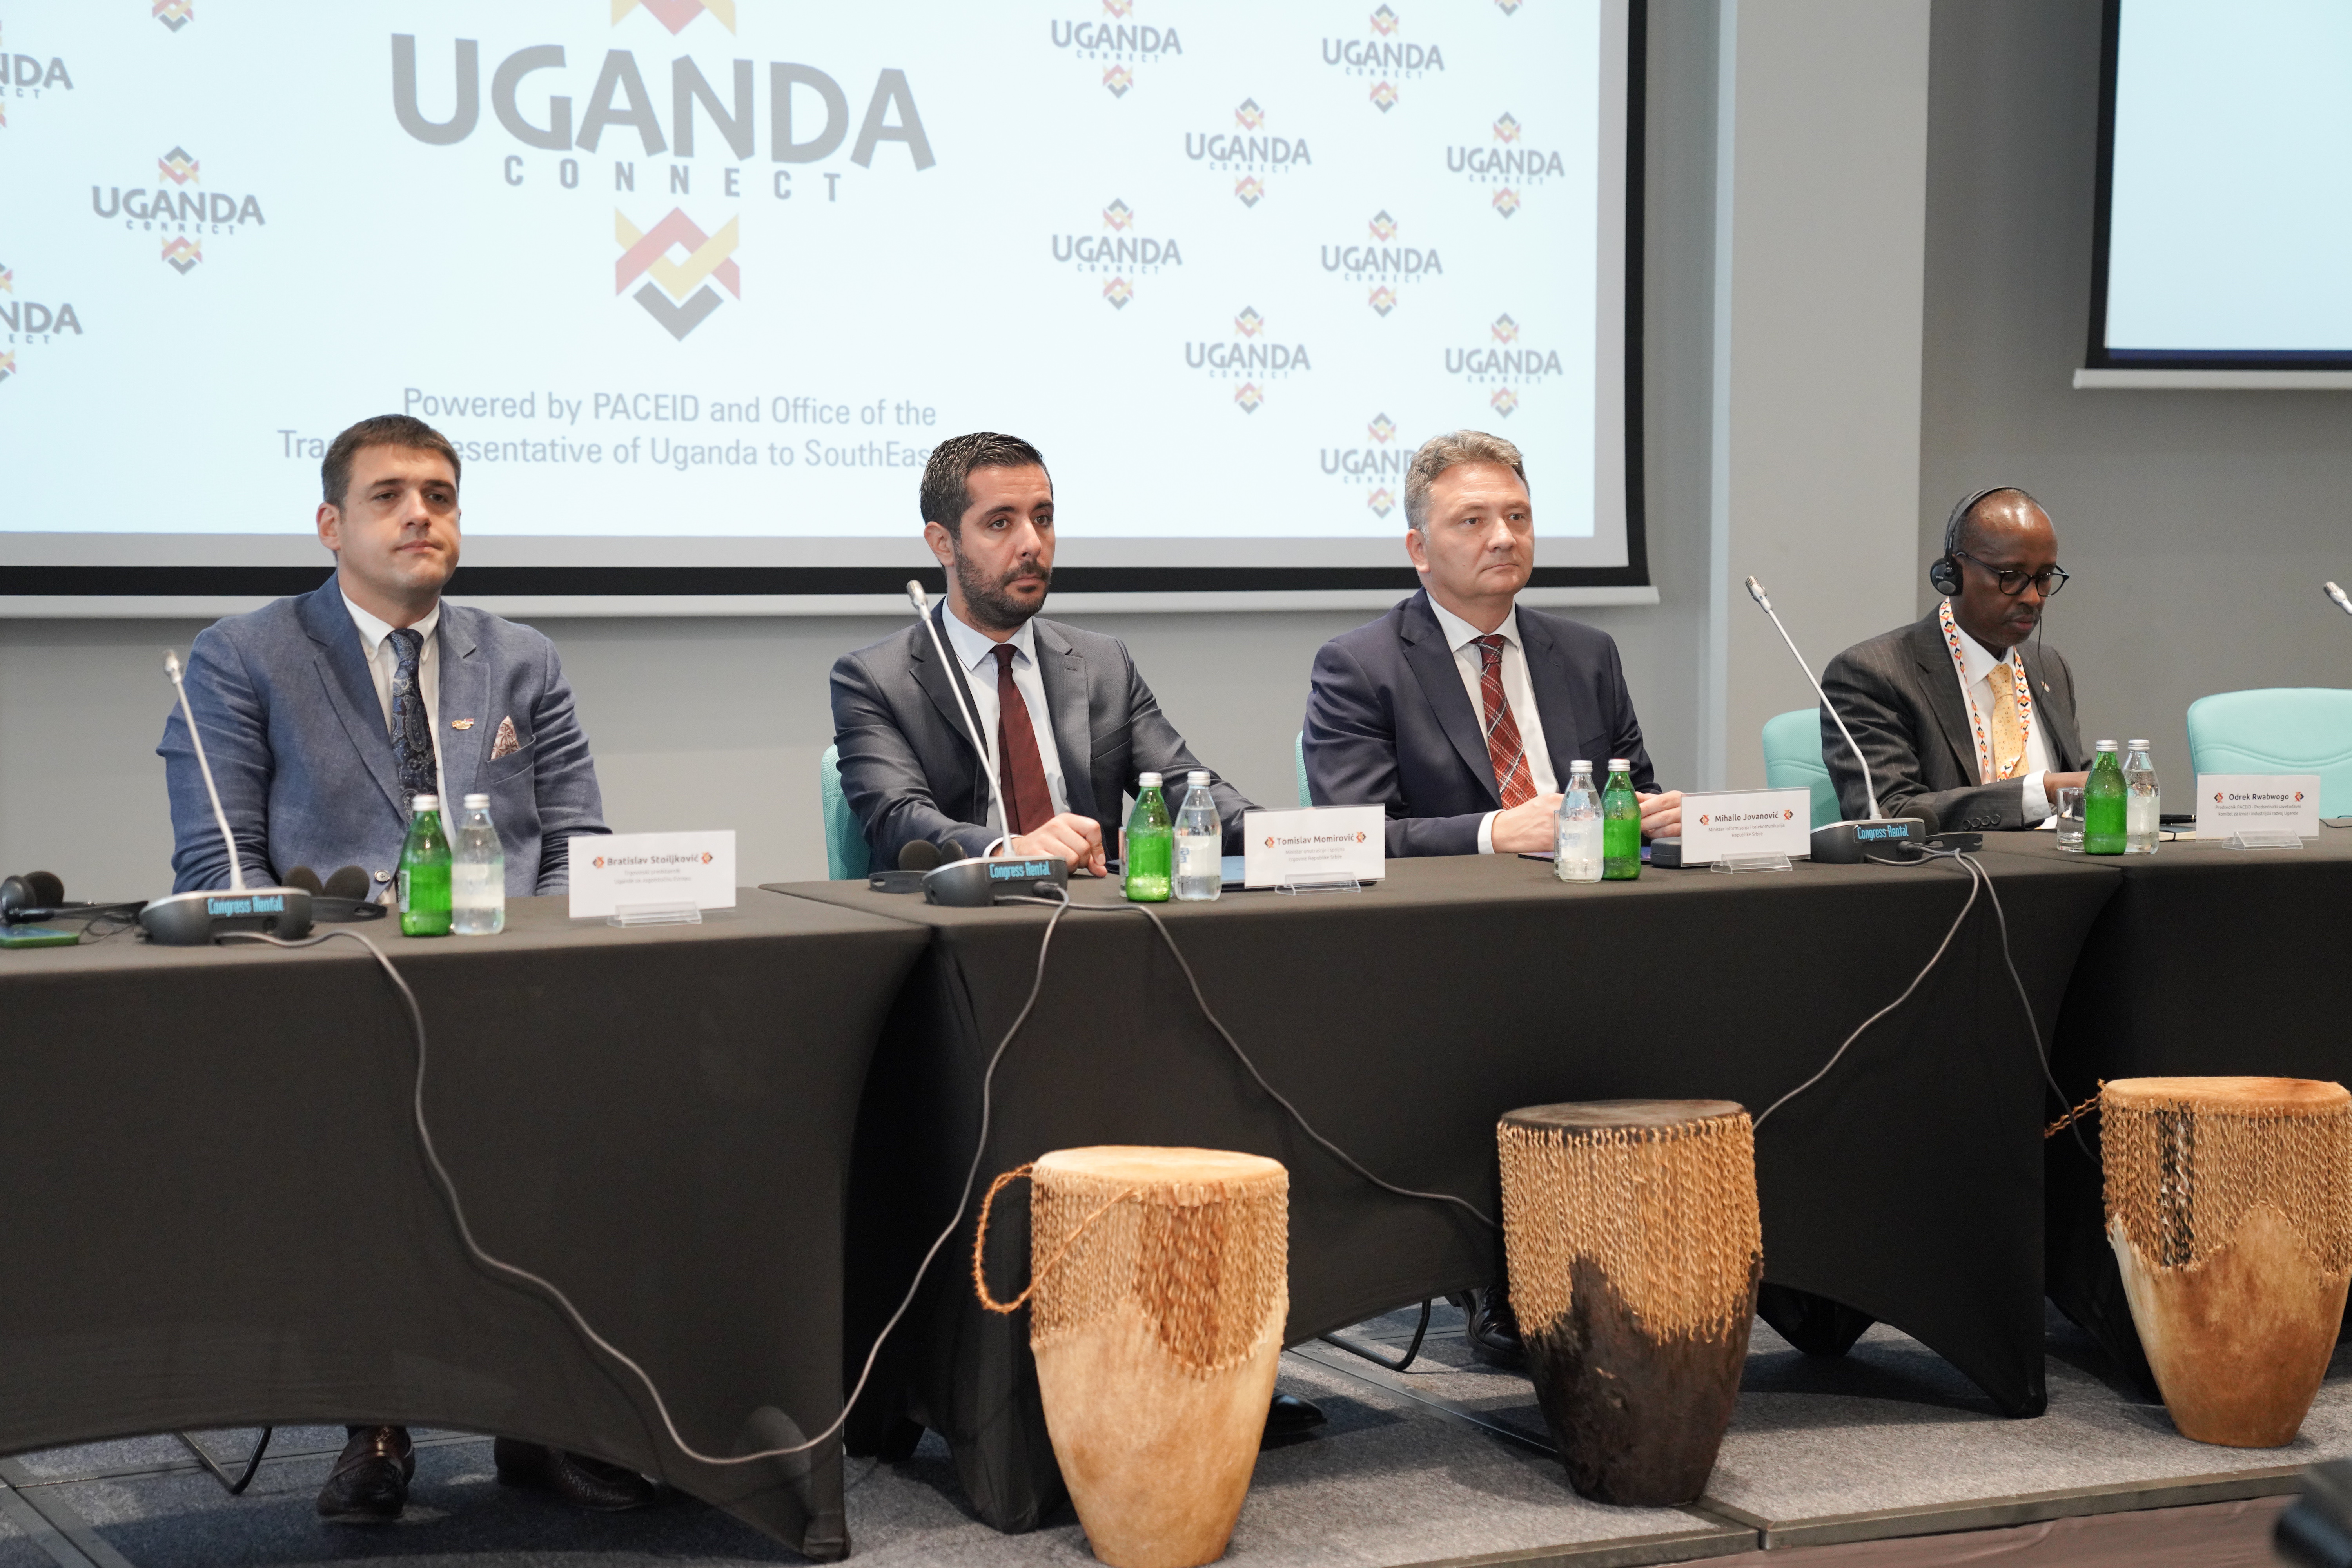 Momirović: Nova epoha u odnosima Srbije i Ugande 